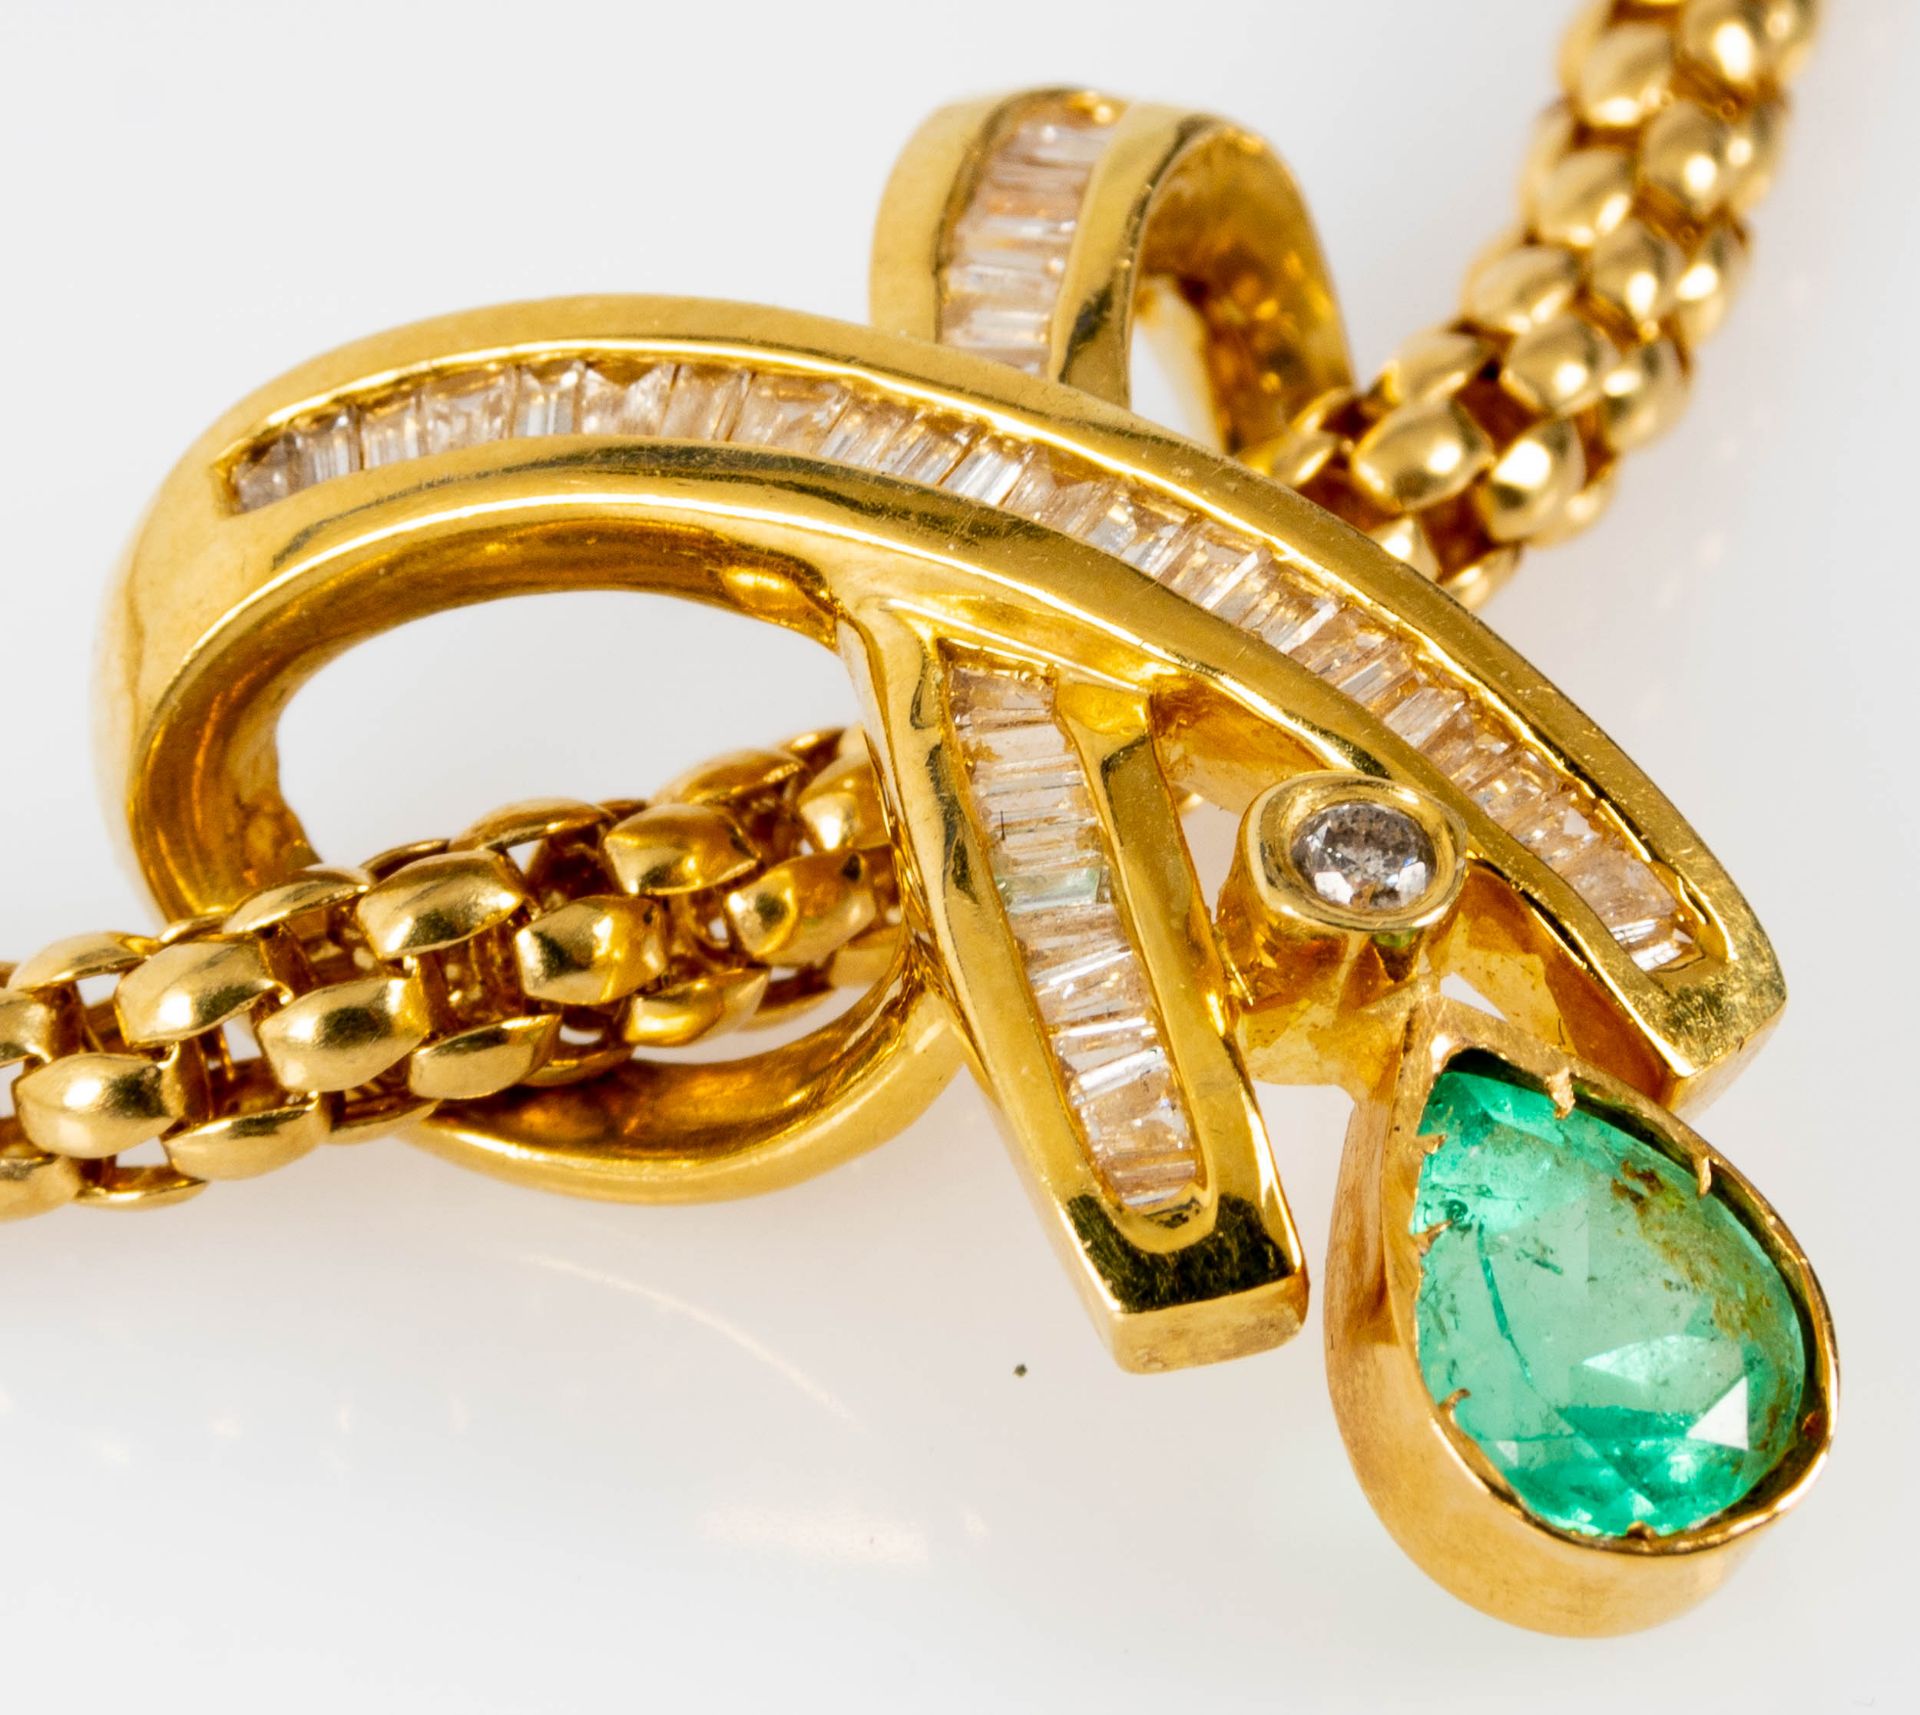 Prächtiges Smaragd-Brillant-Collier, bewegliche, ca. 46 cm lange tauförmige Halskette mit einer Bre - Image 4 of 10